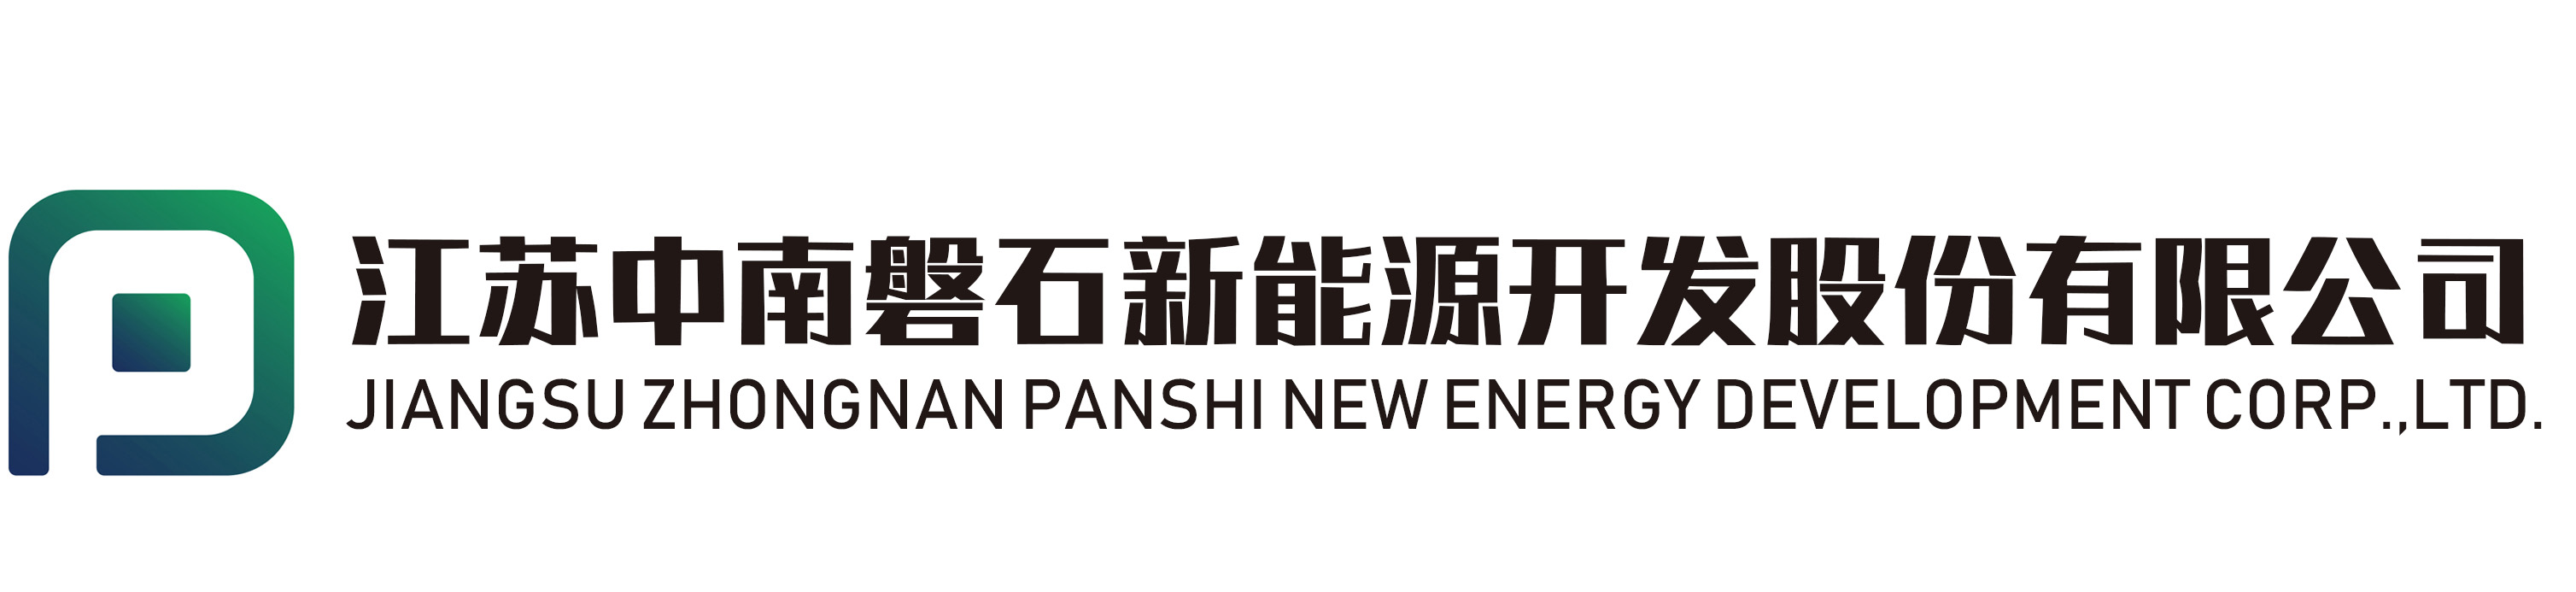 江蘇磐石新能源開發股份有限公司